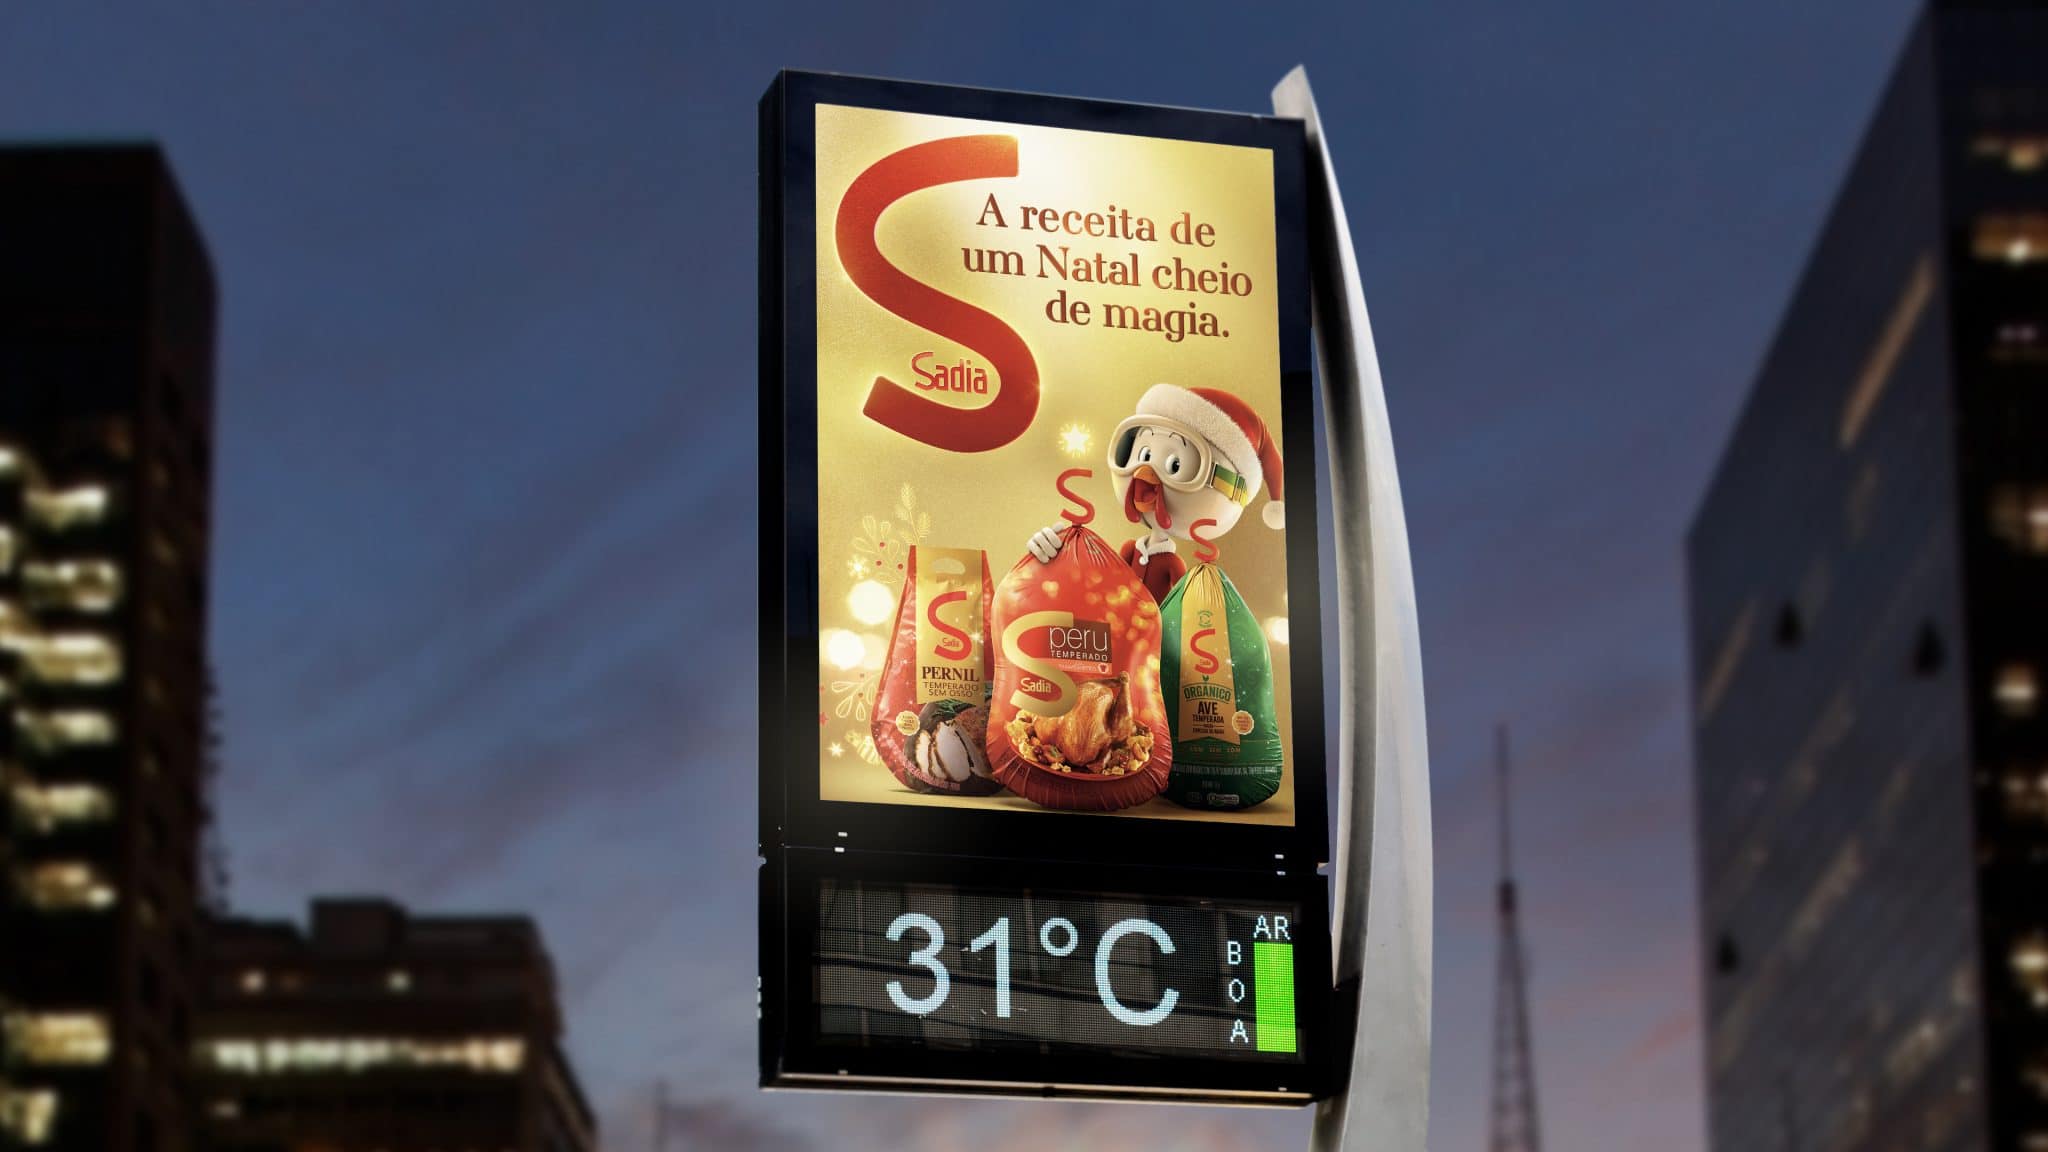 Sadia leva Magia do Natal para as ruas de São Paulo e Rio de Janeiro